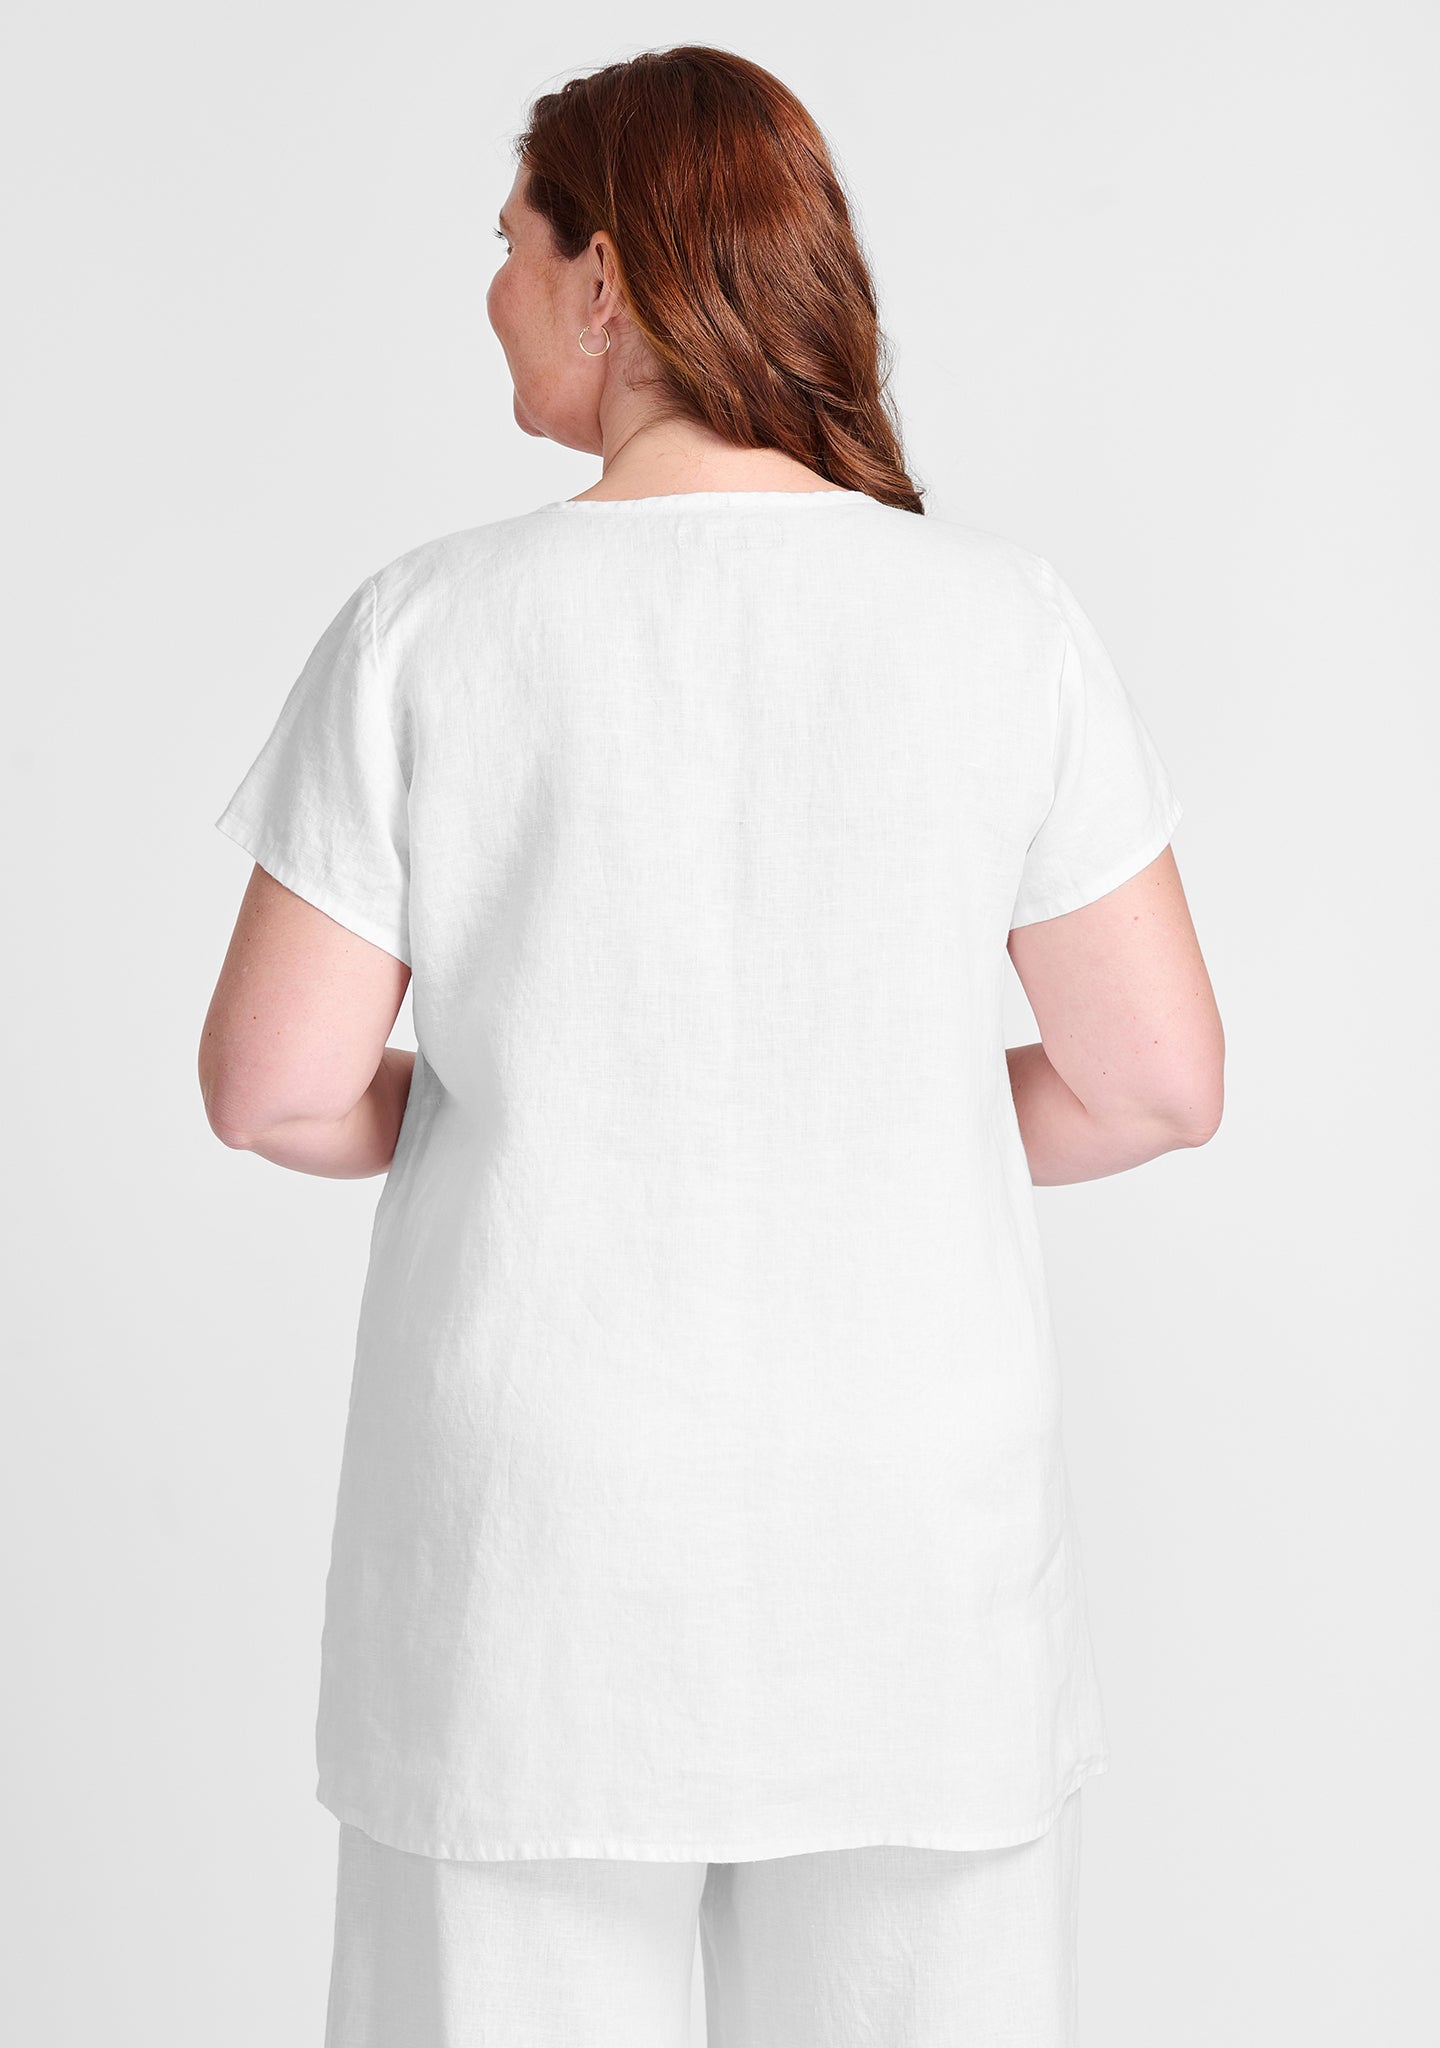 simplest tee linen shirt details